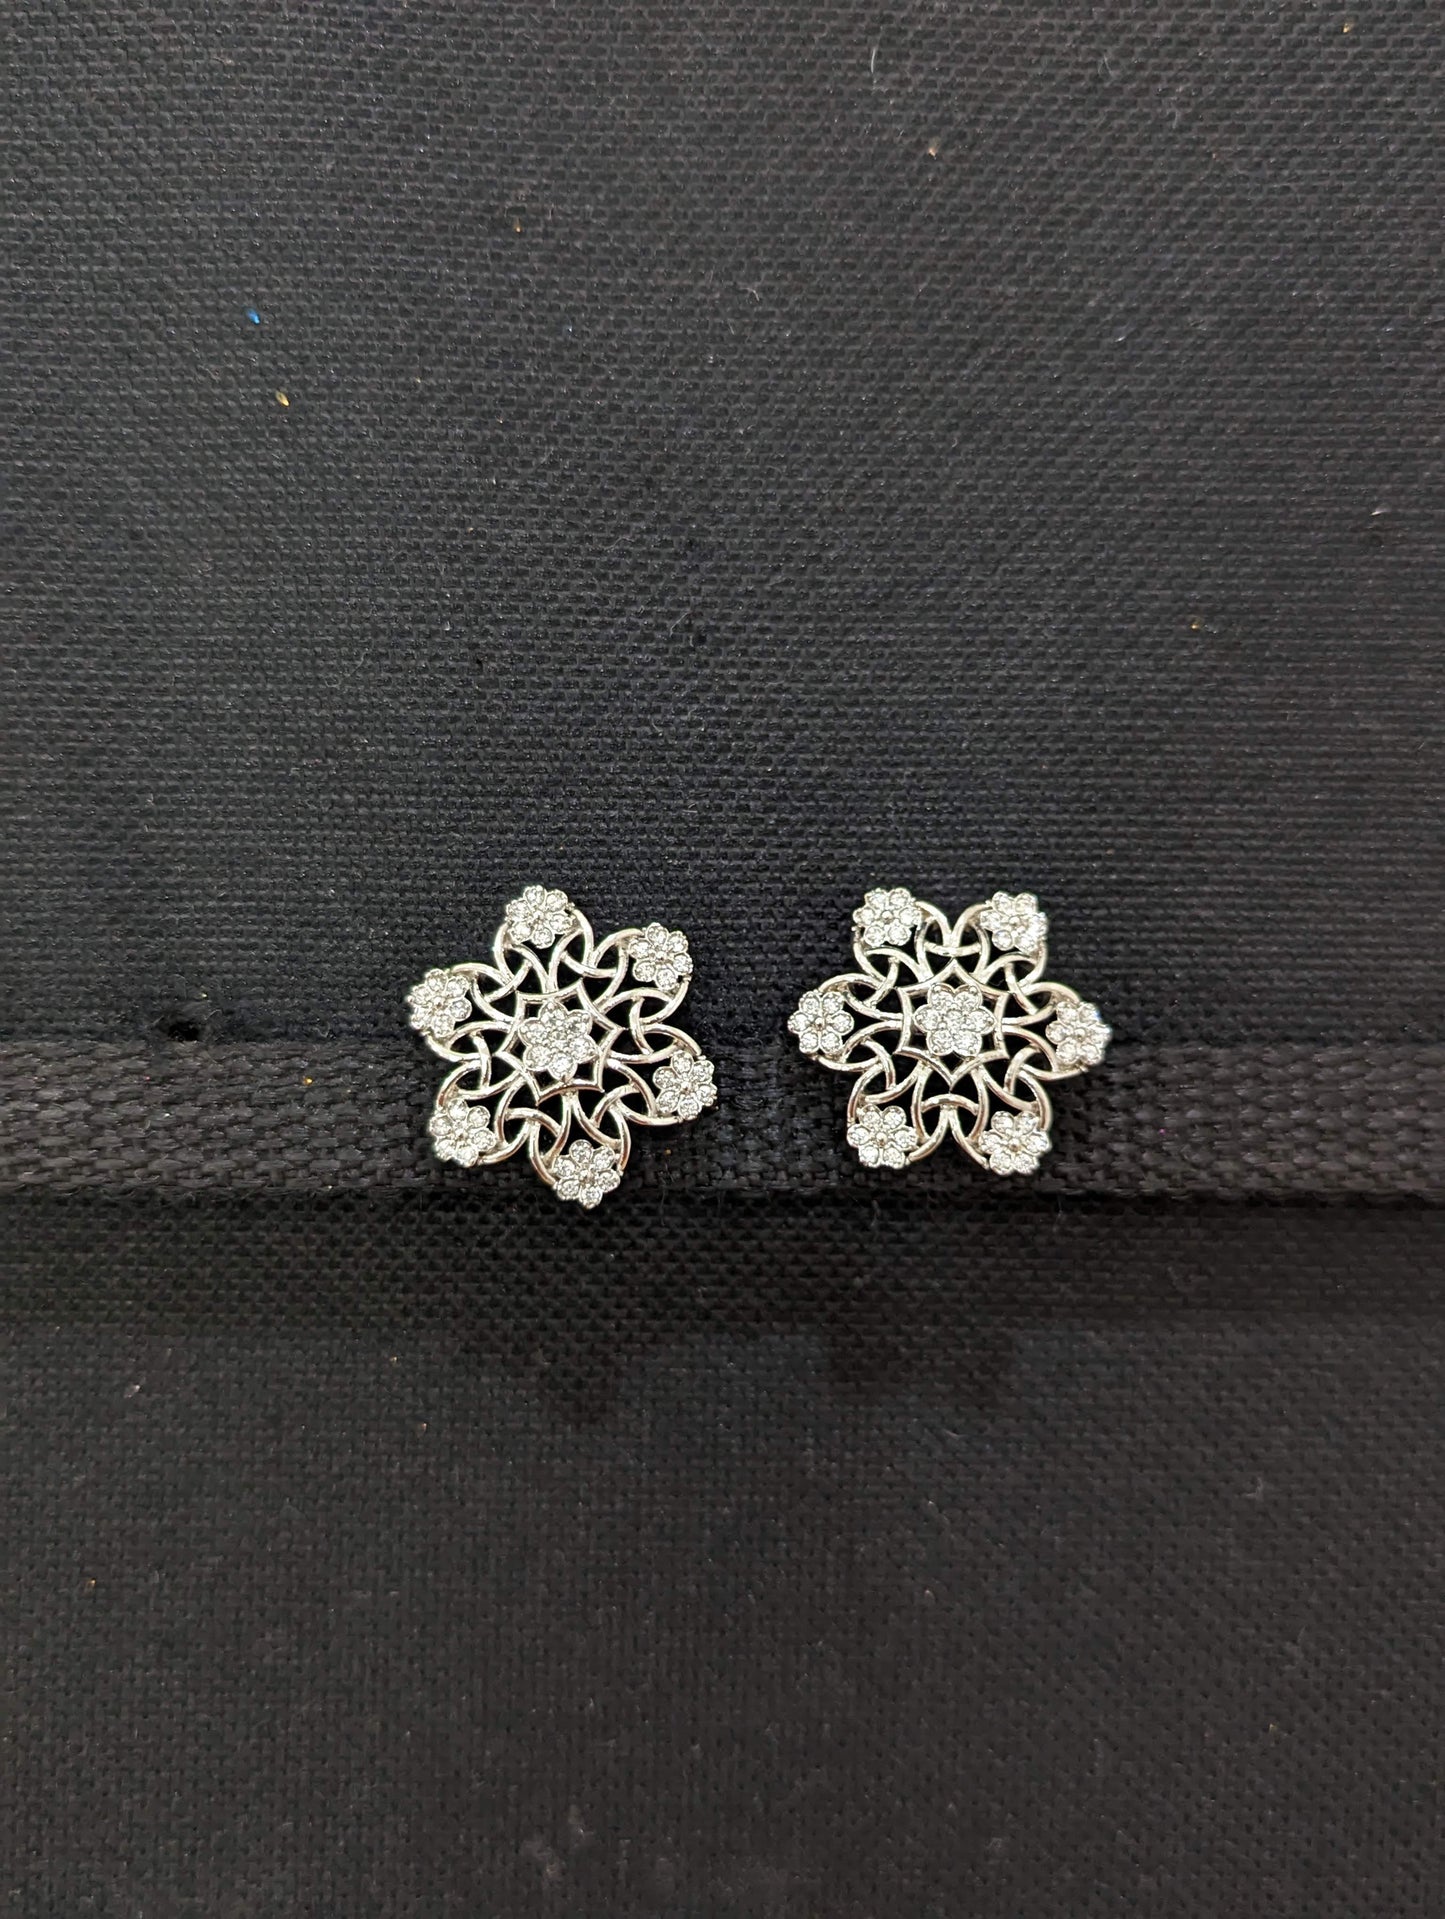 Snowflakes design CZ Stud Earrings